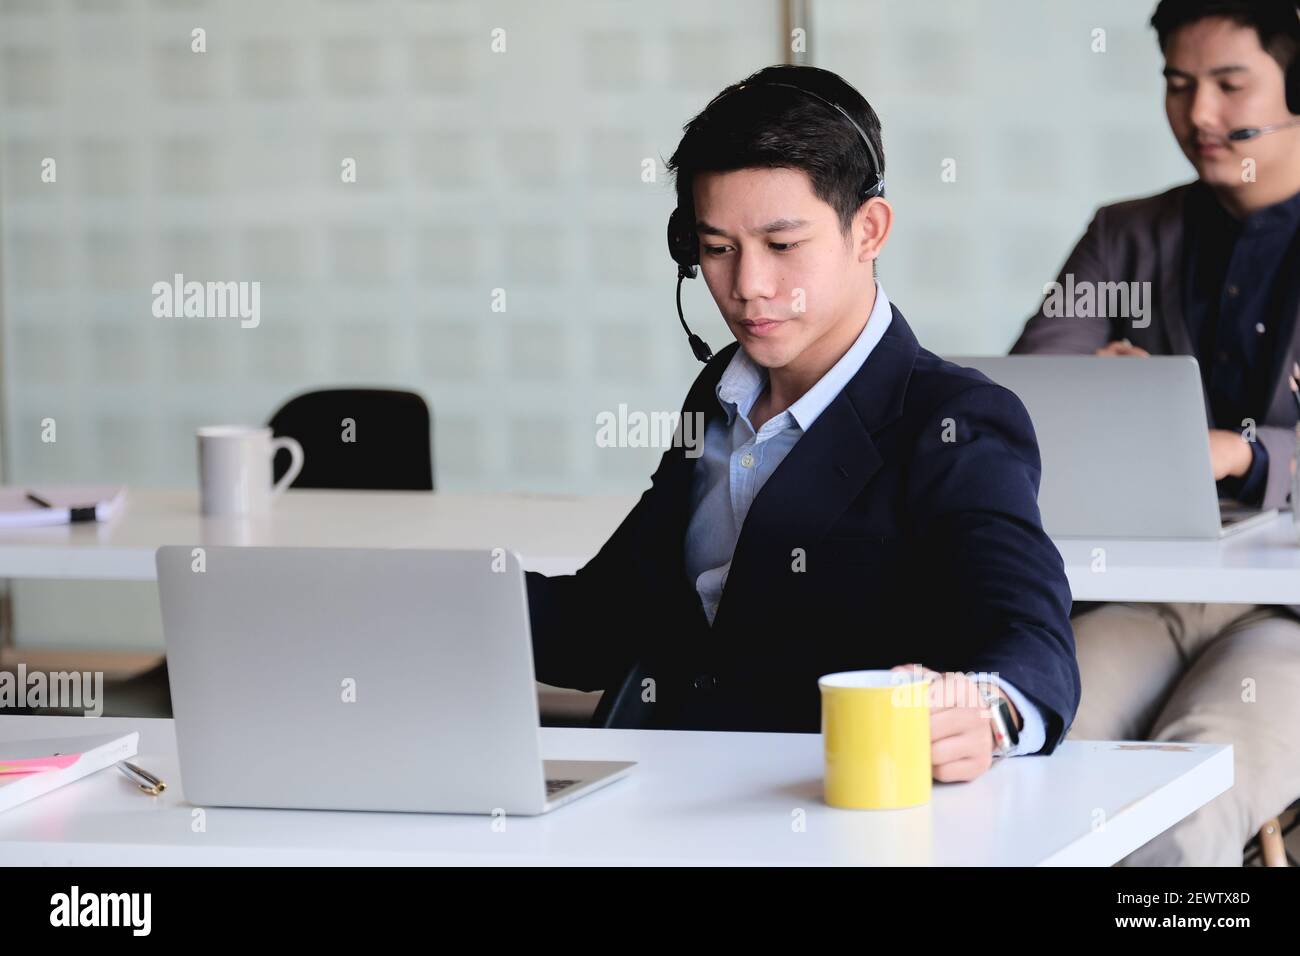 Uomo d'affari asiatico in cuffia che guarda il laptop, guarda un buon webinar, consulente del cliente, imparare a distanza lingue, prendere appunti, uomo felice Foto Stock